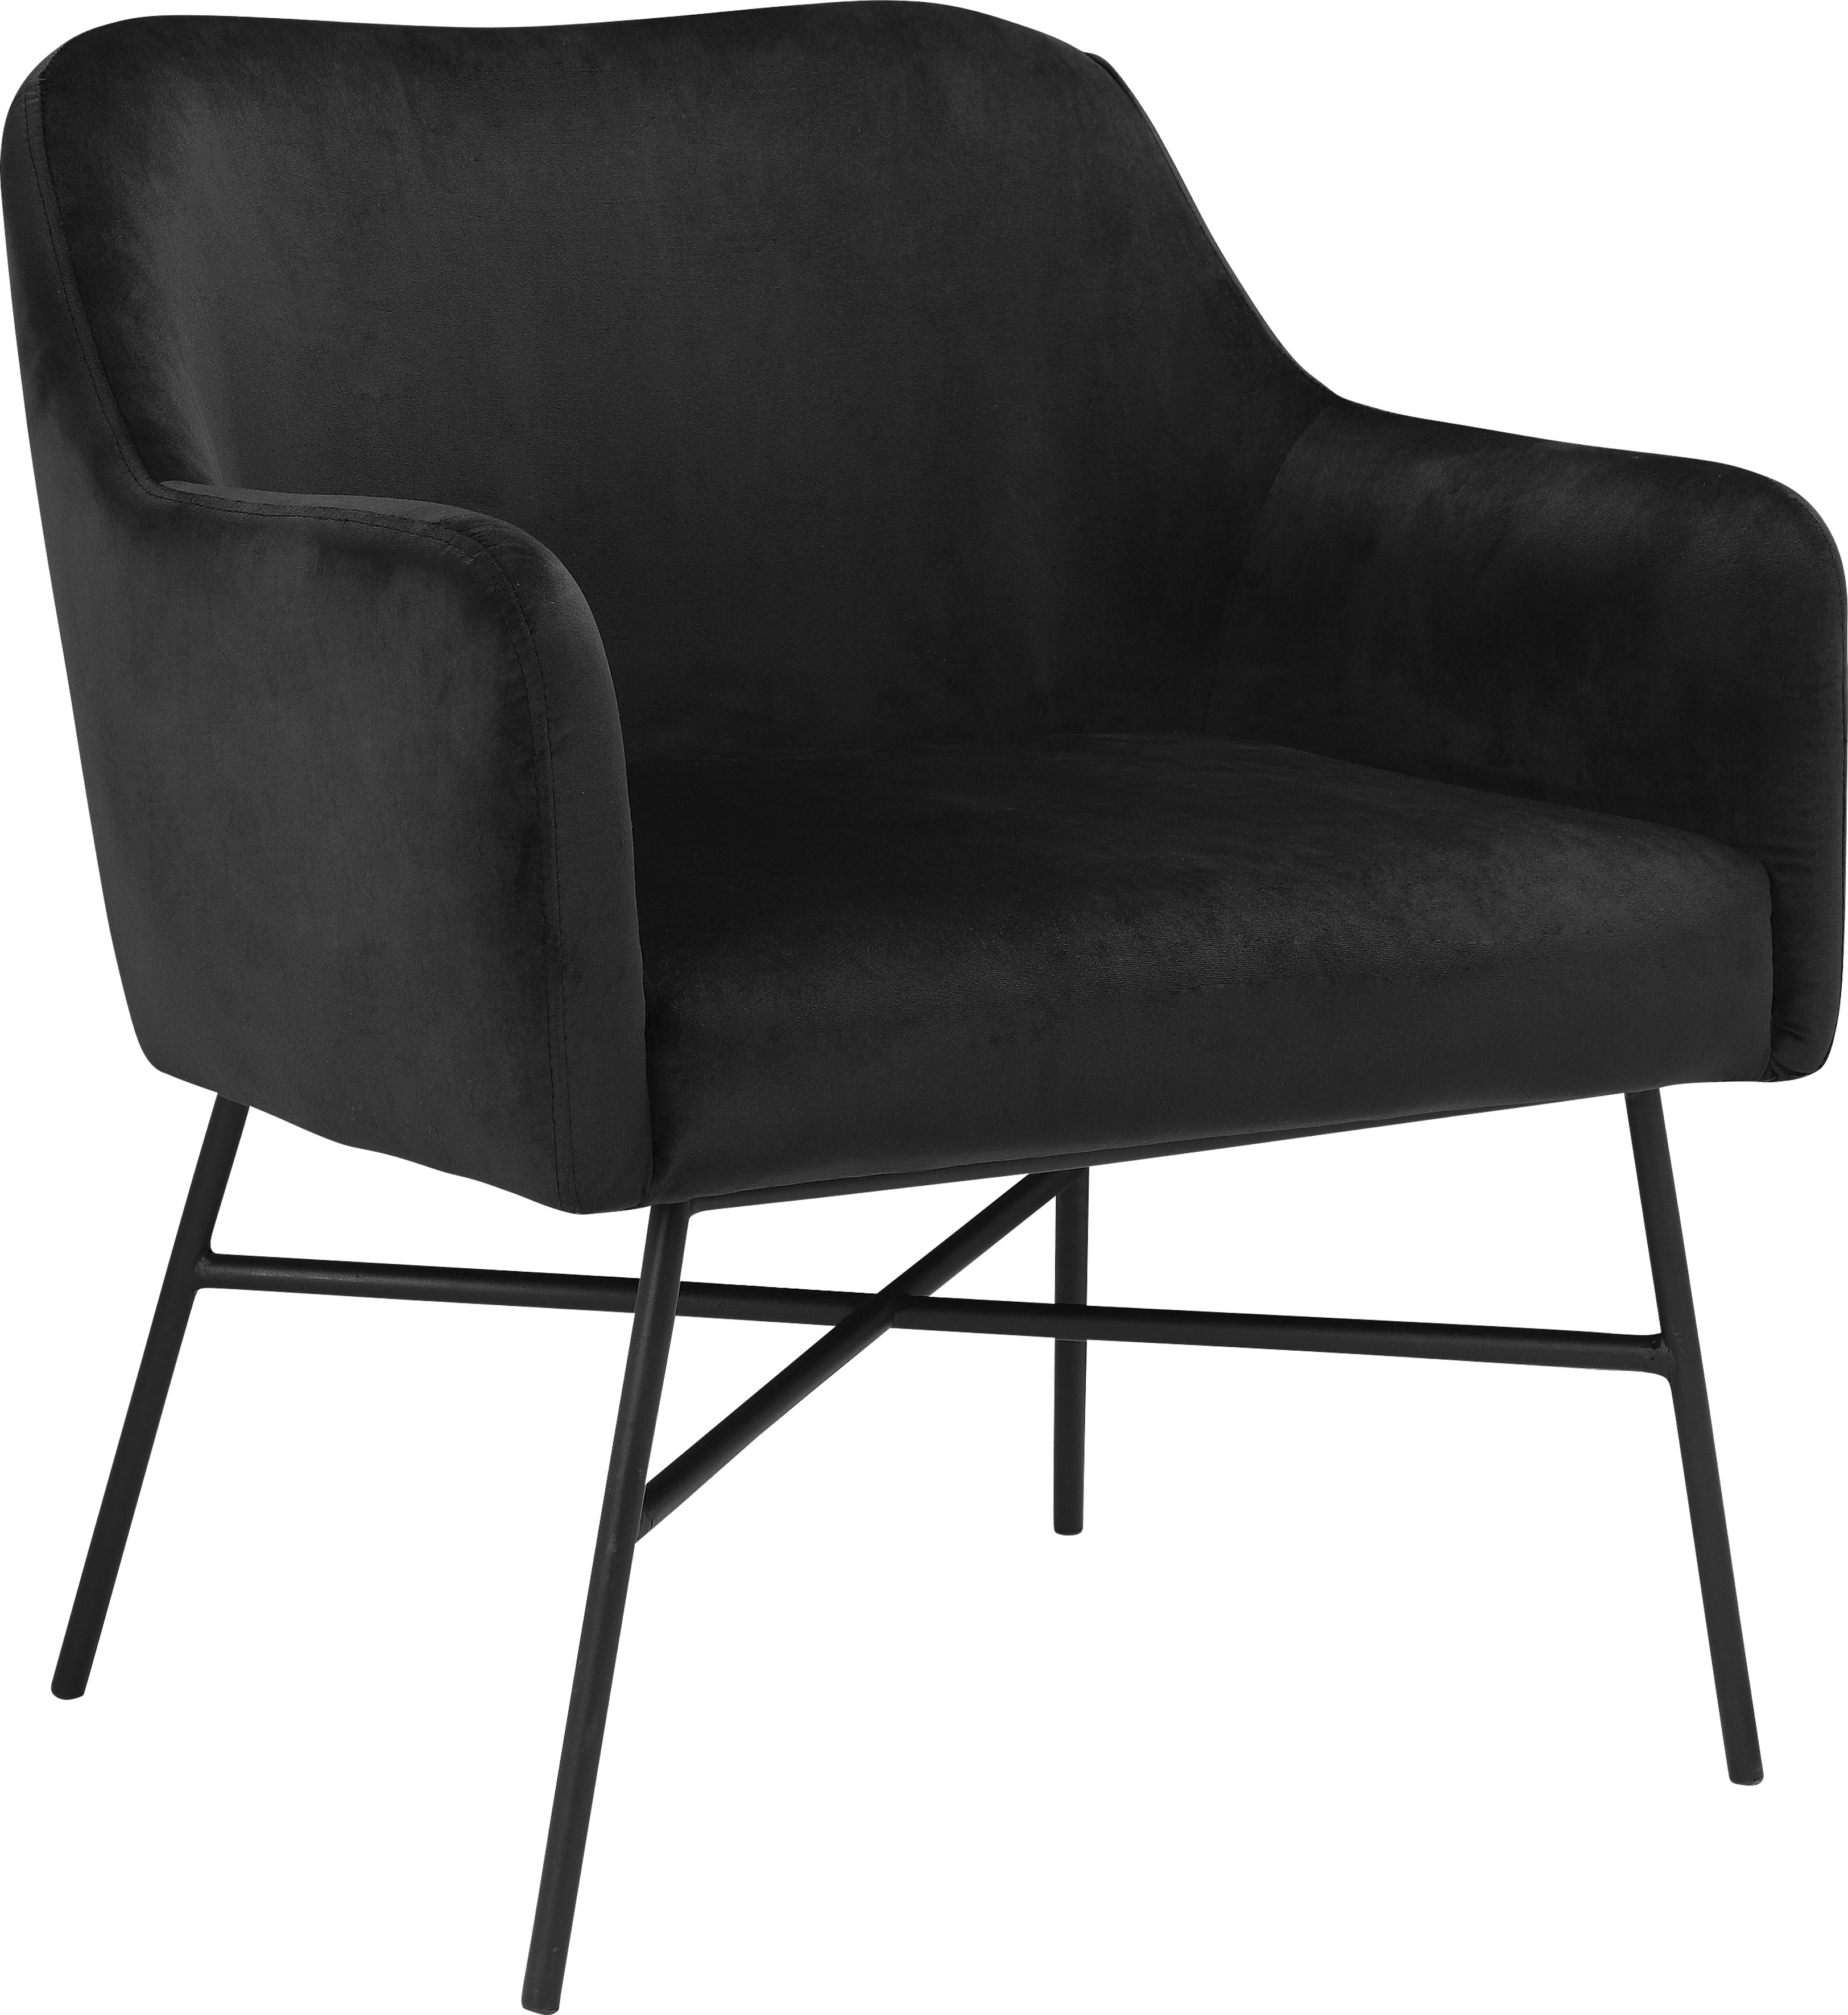 INOSIGN Loungesessel Frija, (1 St.), mit schwarzem Metallgestell, in verschiedenen Stoff- und Farbvarianten erhältlich, Sitzhöhe 43 cm